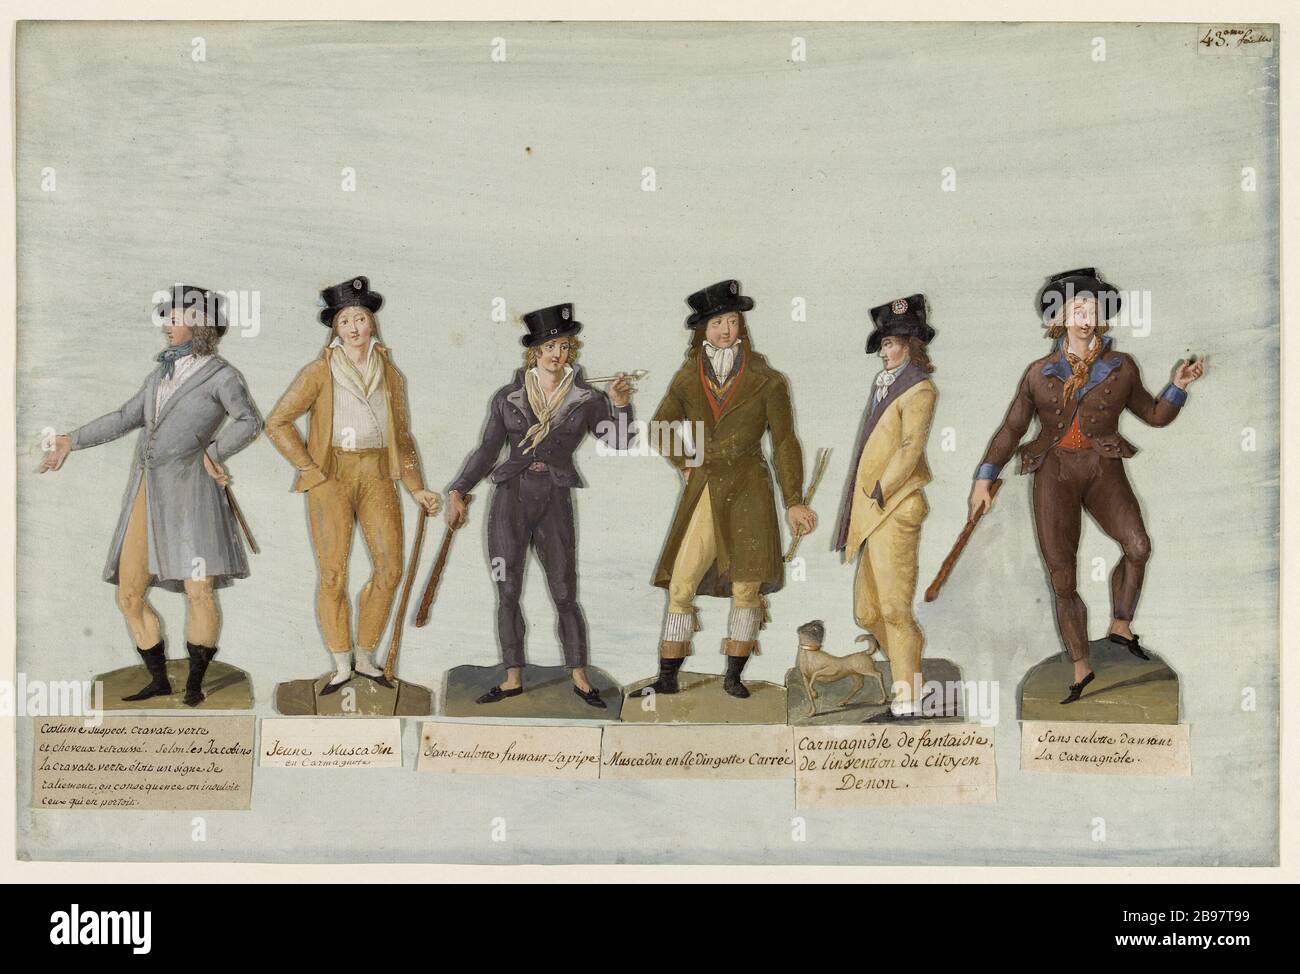 Sechs Herrenanzüge 'suspect costüm', 'grüne Krawatte und Haare aufgerollt', 'junge Dandy', 'Sans-culotte raucht seine Pfeife,' 'andy in frock Square', 'Fancy Bluse', 'Tanzsculotte der Karmagnole Jean-Baptiste Lesueur (1749-1826). "Sechs Kostüme maskulins: "Kostümverdächtige", "cravate verte et cheveux retroussés", "jeune muscadin", "ans-culotte fumant sa pipe", "Muscadin en redingote carrée", "carmagnole de fantaisie", "ans-culotte dansant la carmagnole". Gouache découpée collée sur papier blauté. Paris, musée Carnavalet. Stockfoto